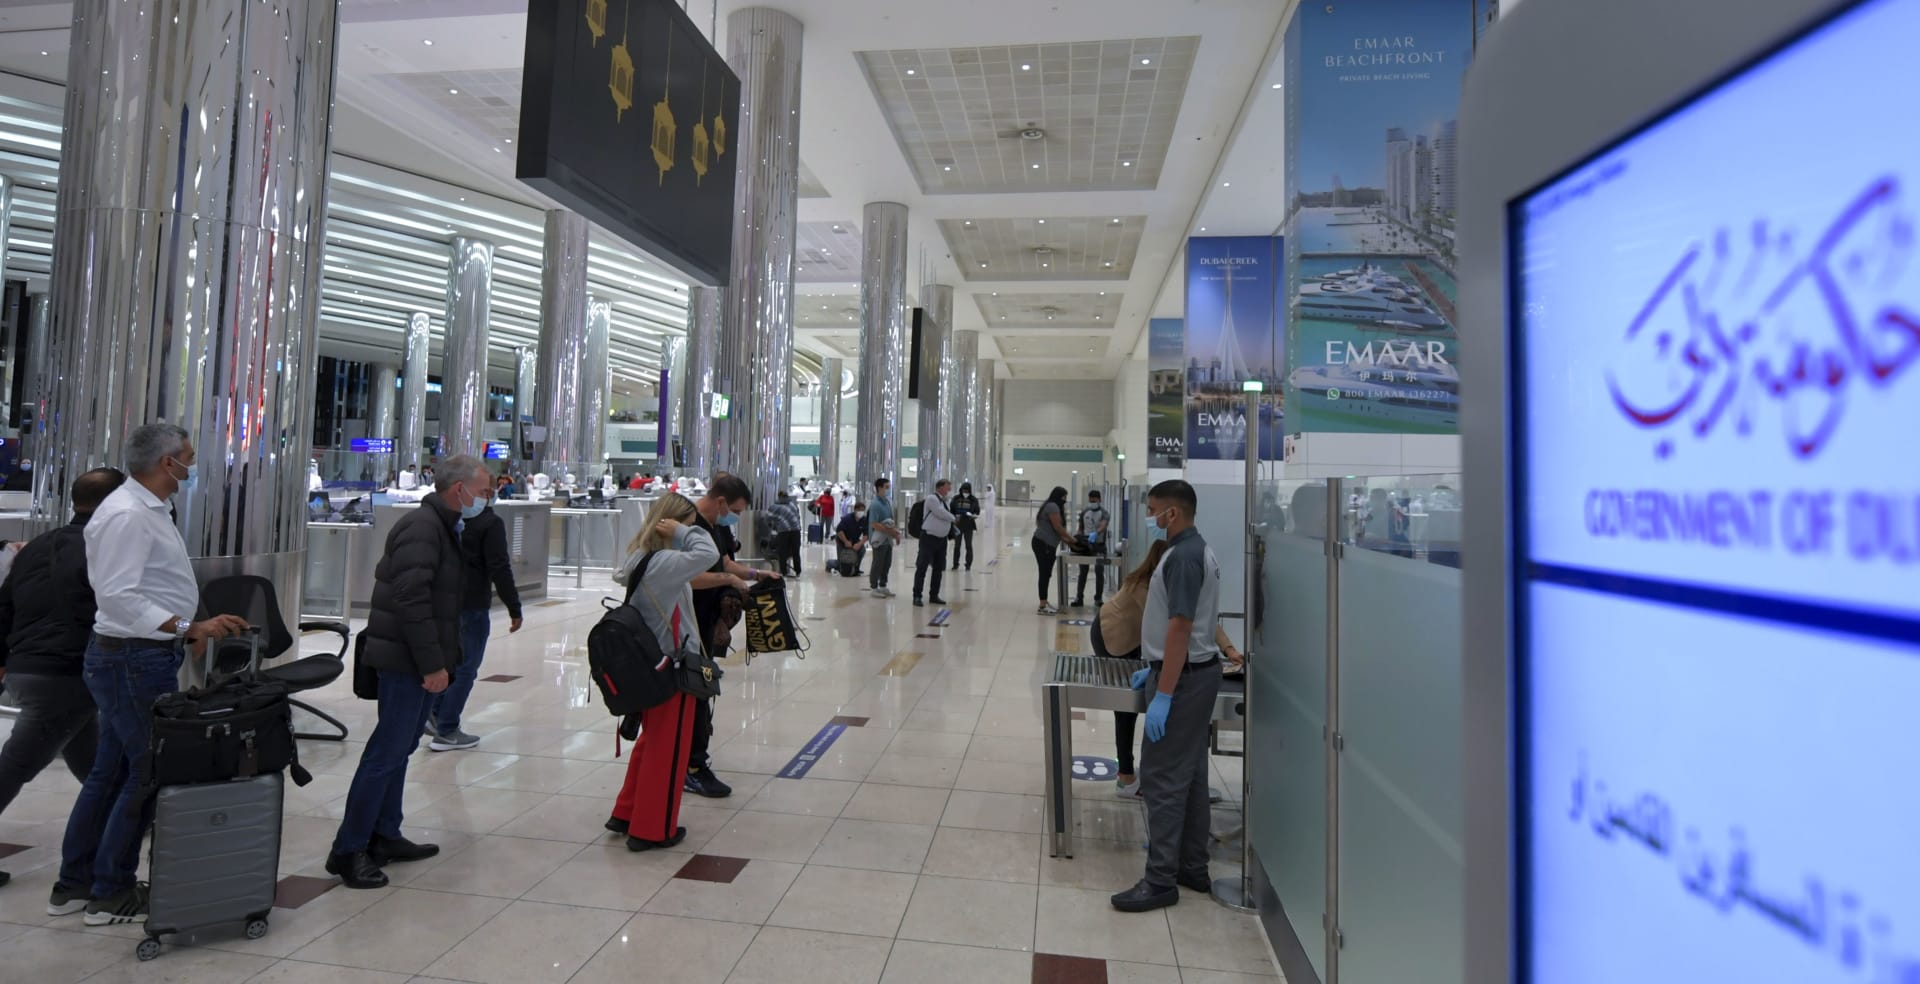 الداخلية الإماراتية تُعلق على فيديو شخص صرخ "فلسطين حرة" أمام مسافرين إلى إسرائيل في دبي